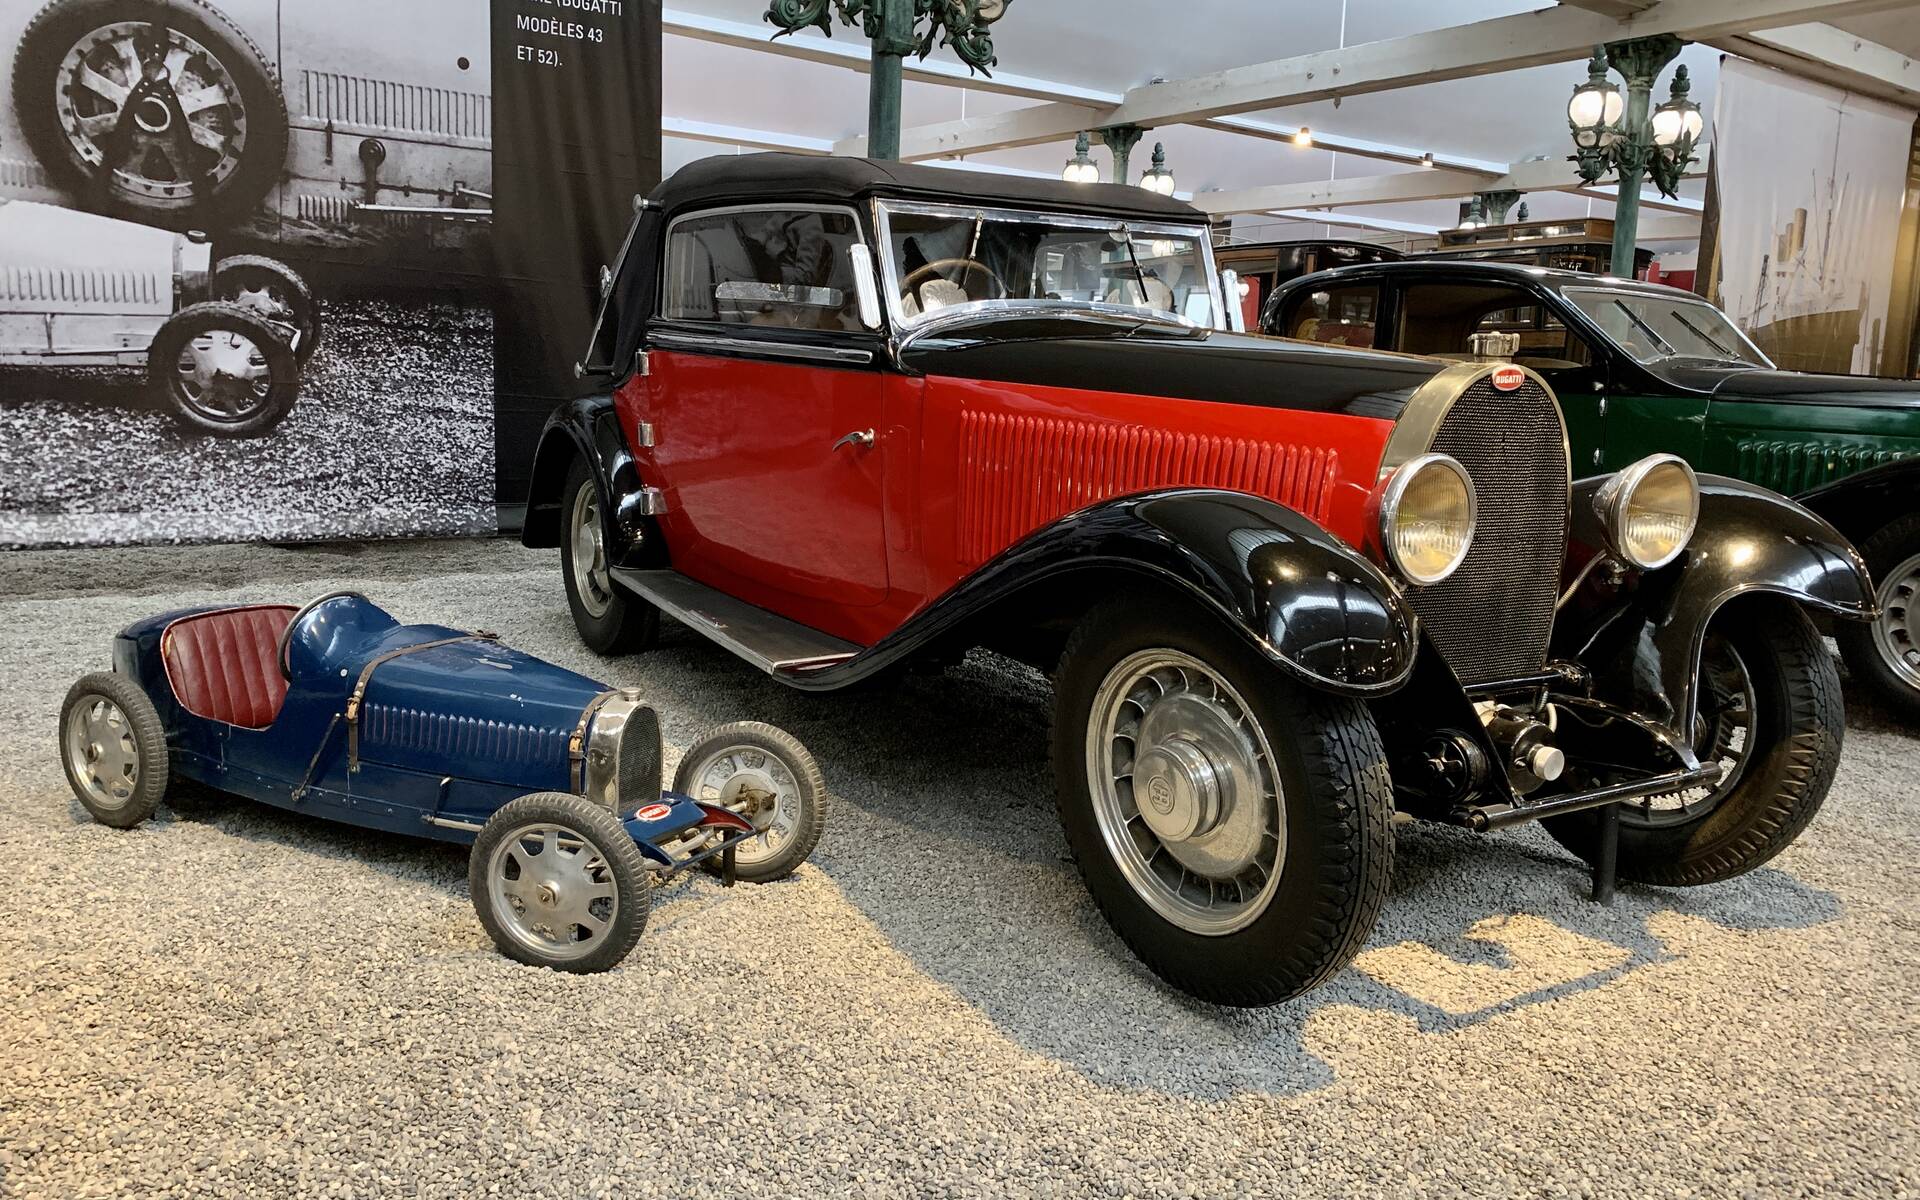 En photos : une centaine de Bugatti réunies dans un même musée 503047-en-photos-des-dizaines-de-bugatti-reunies-dans-un-meme-musee